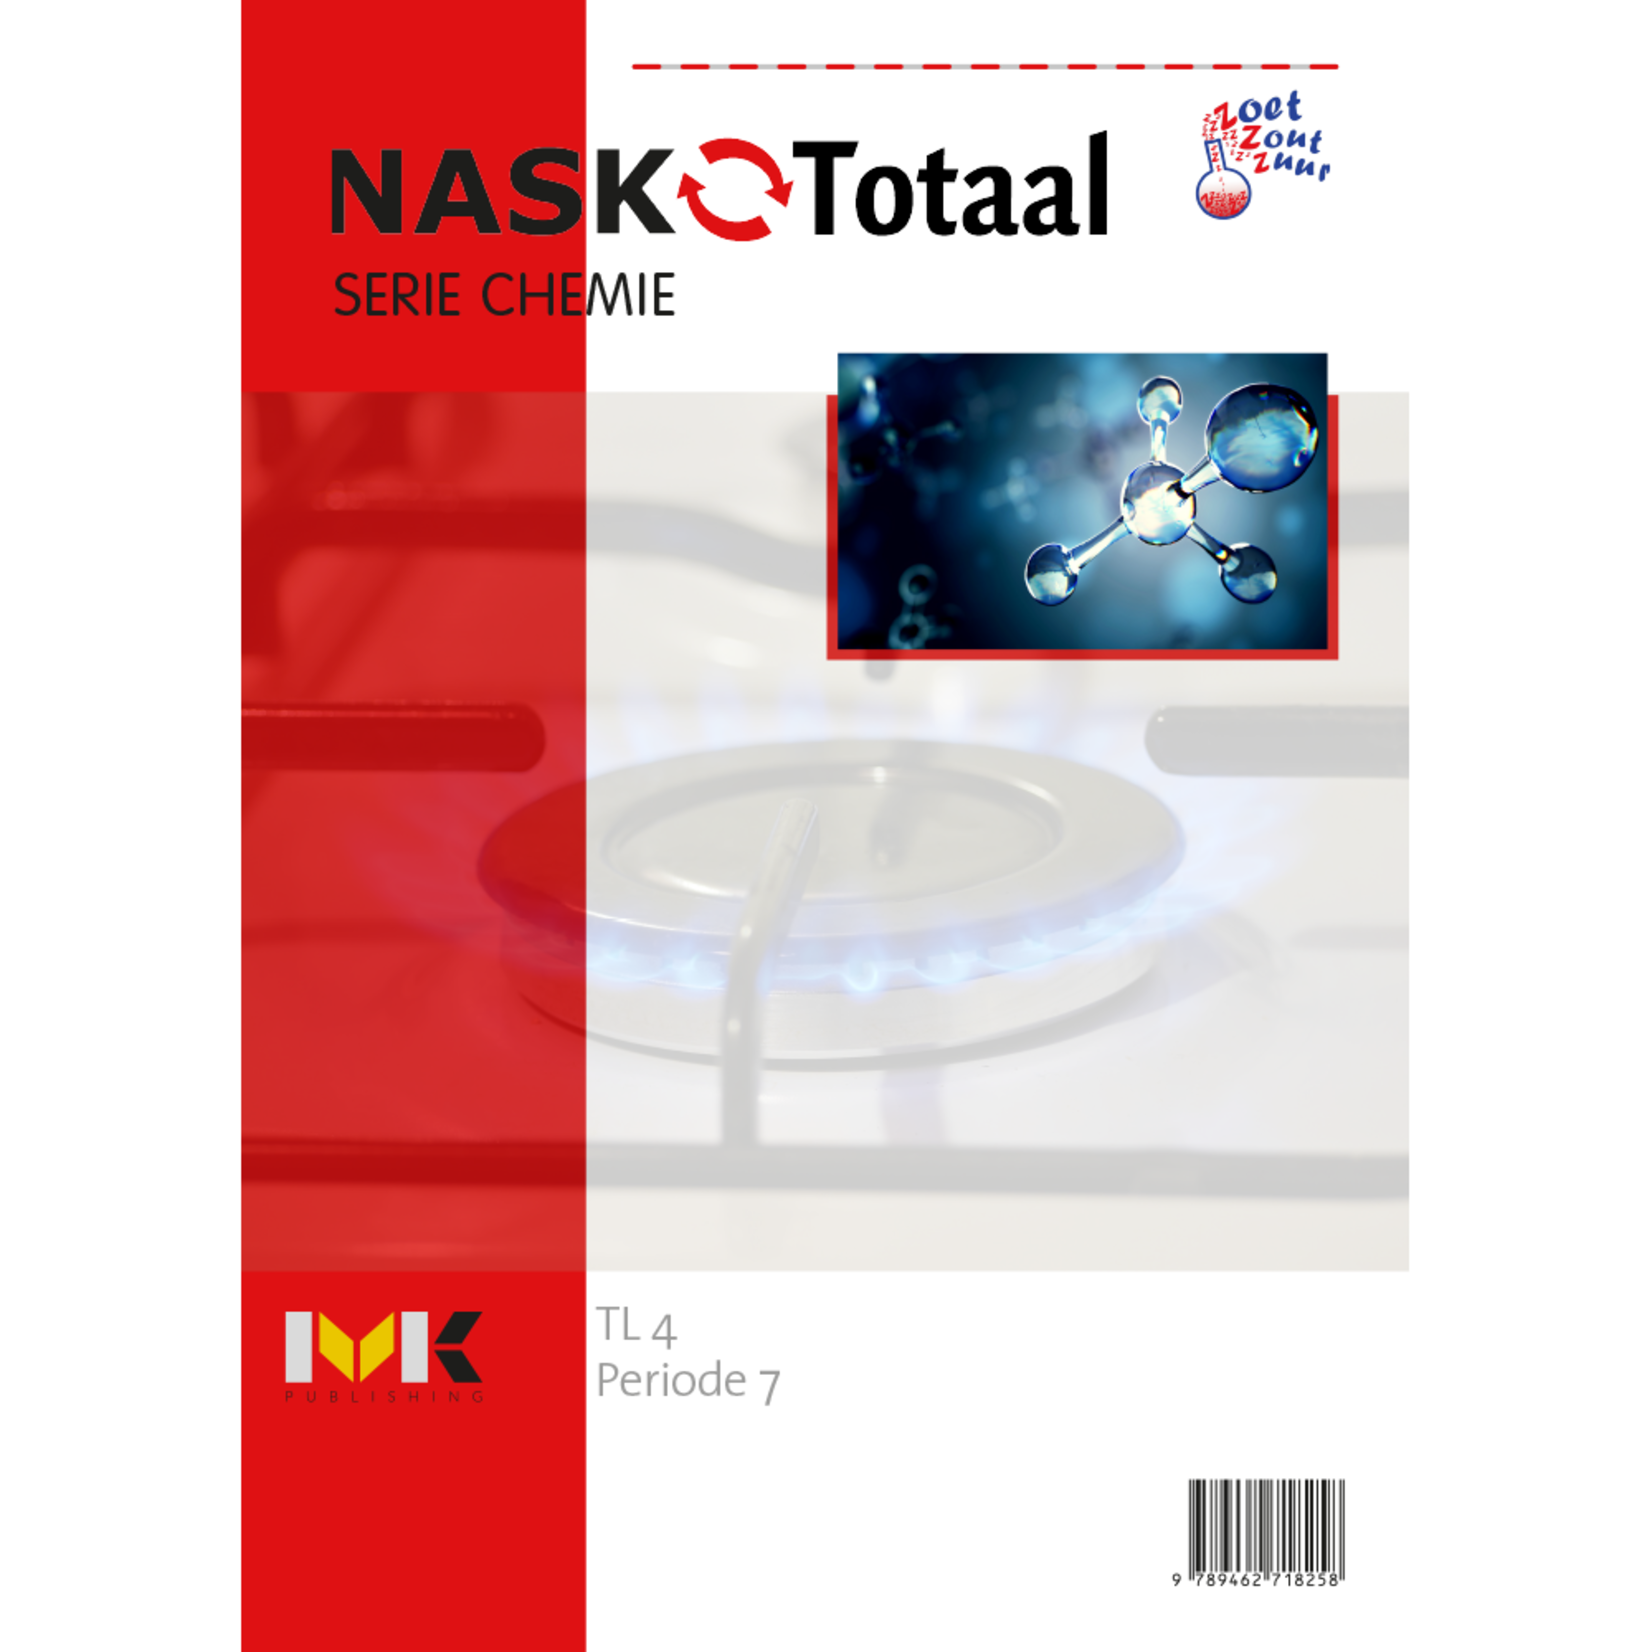 NASK-Totaal - Zoetzoutzuur serie chemie TL 4 - werkboek periode 7